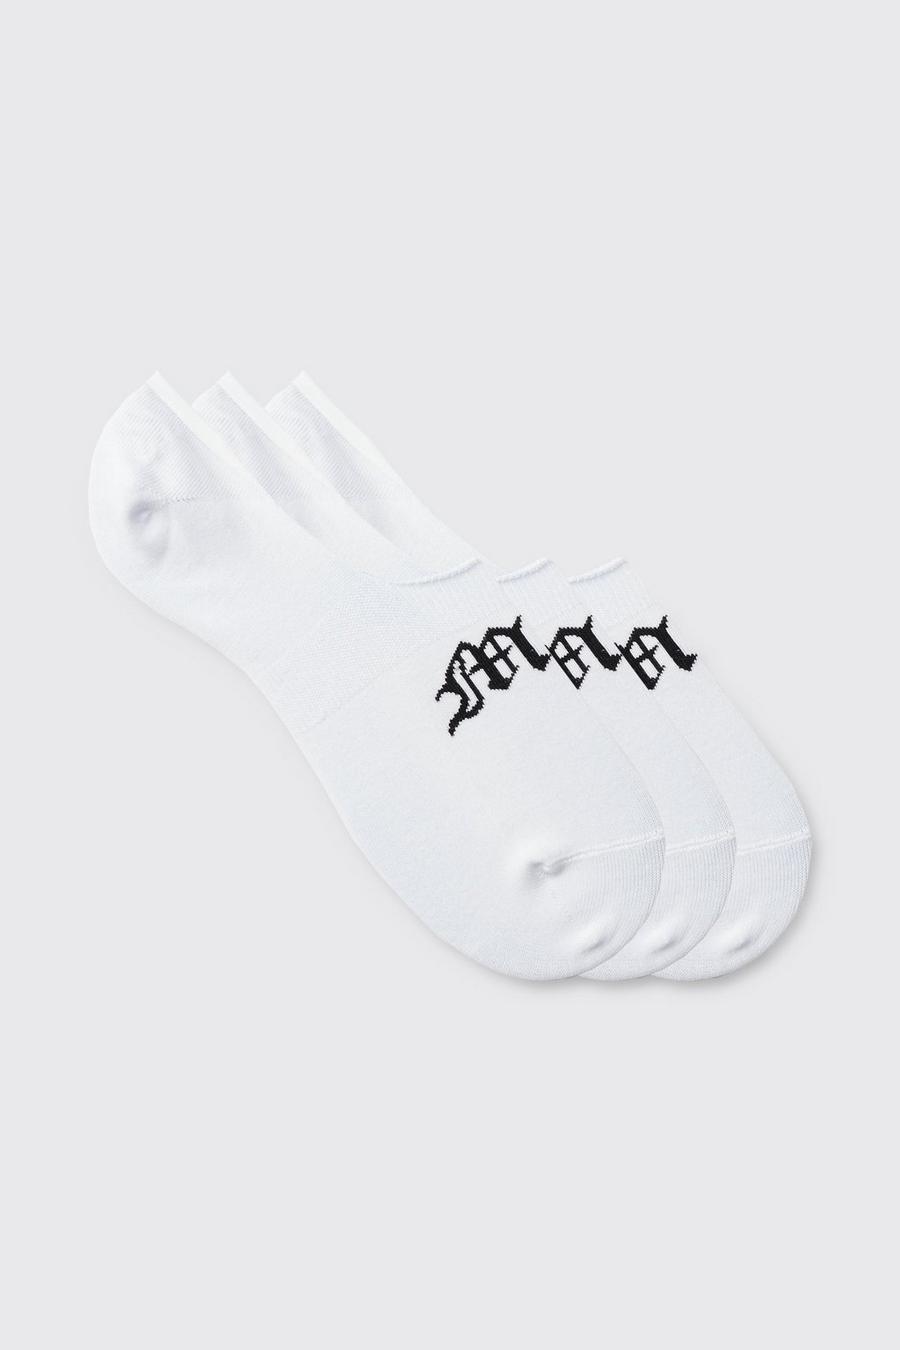 3er-Pack unsichtbare Gothic Man Socken, White